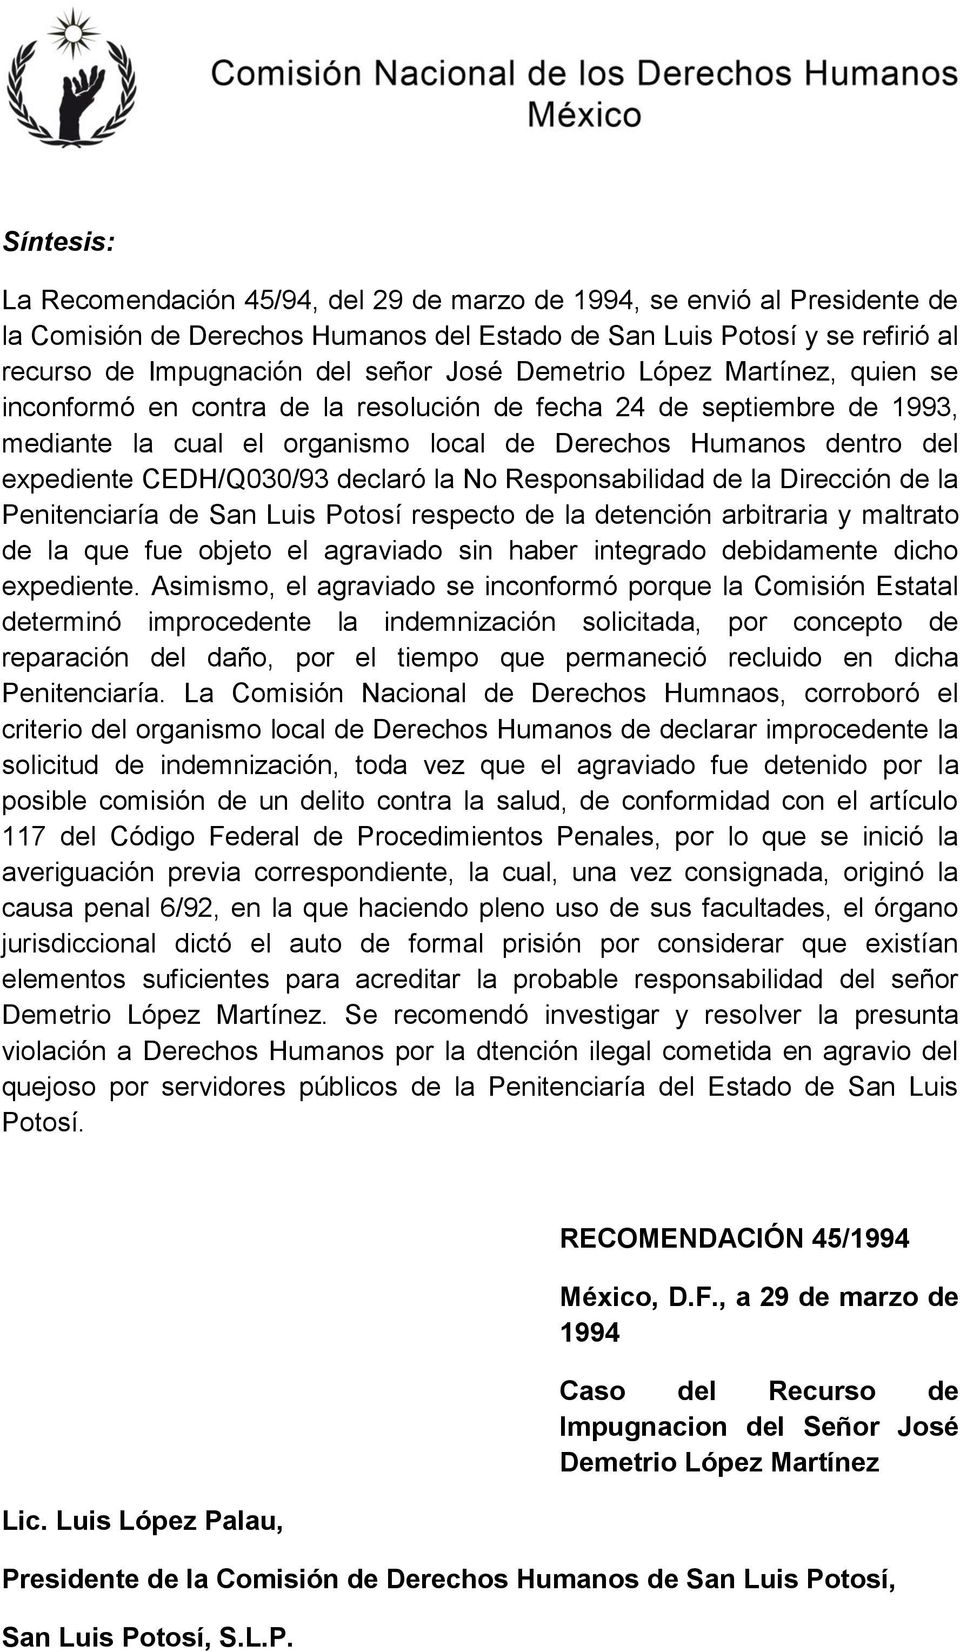 CEDH/Q030/93 declaró la No Responsabilidad de la Dirección de la Penitenciaría de San Luis Potosí respecto de la detención arbitraria y maltrato de la que fue objeto el agraviado sin haber integrado